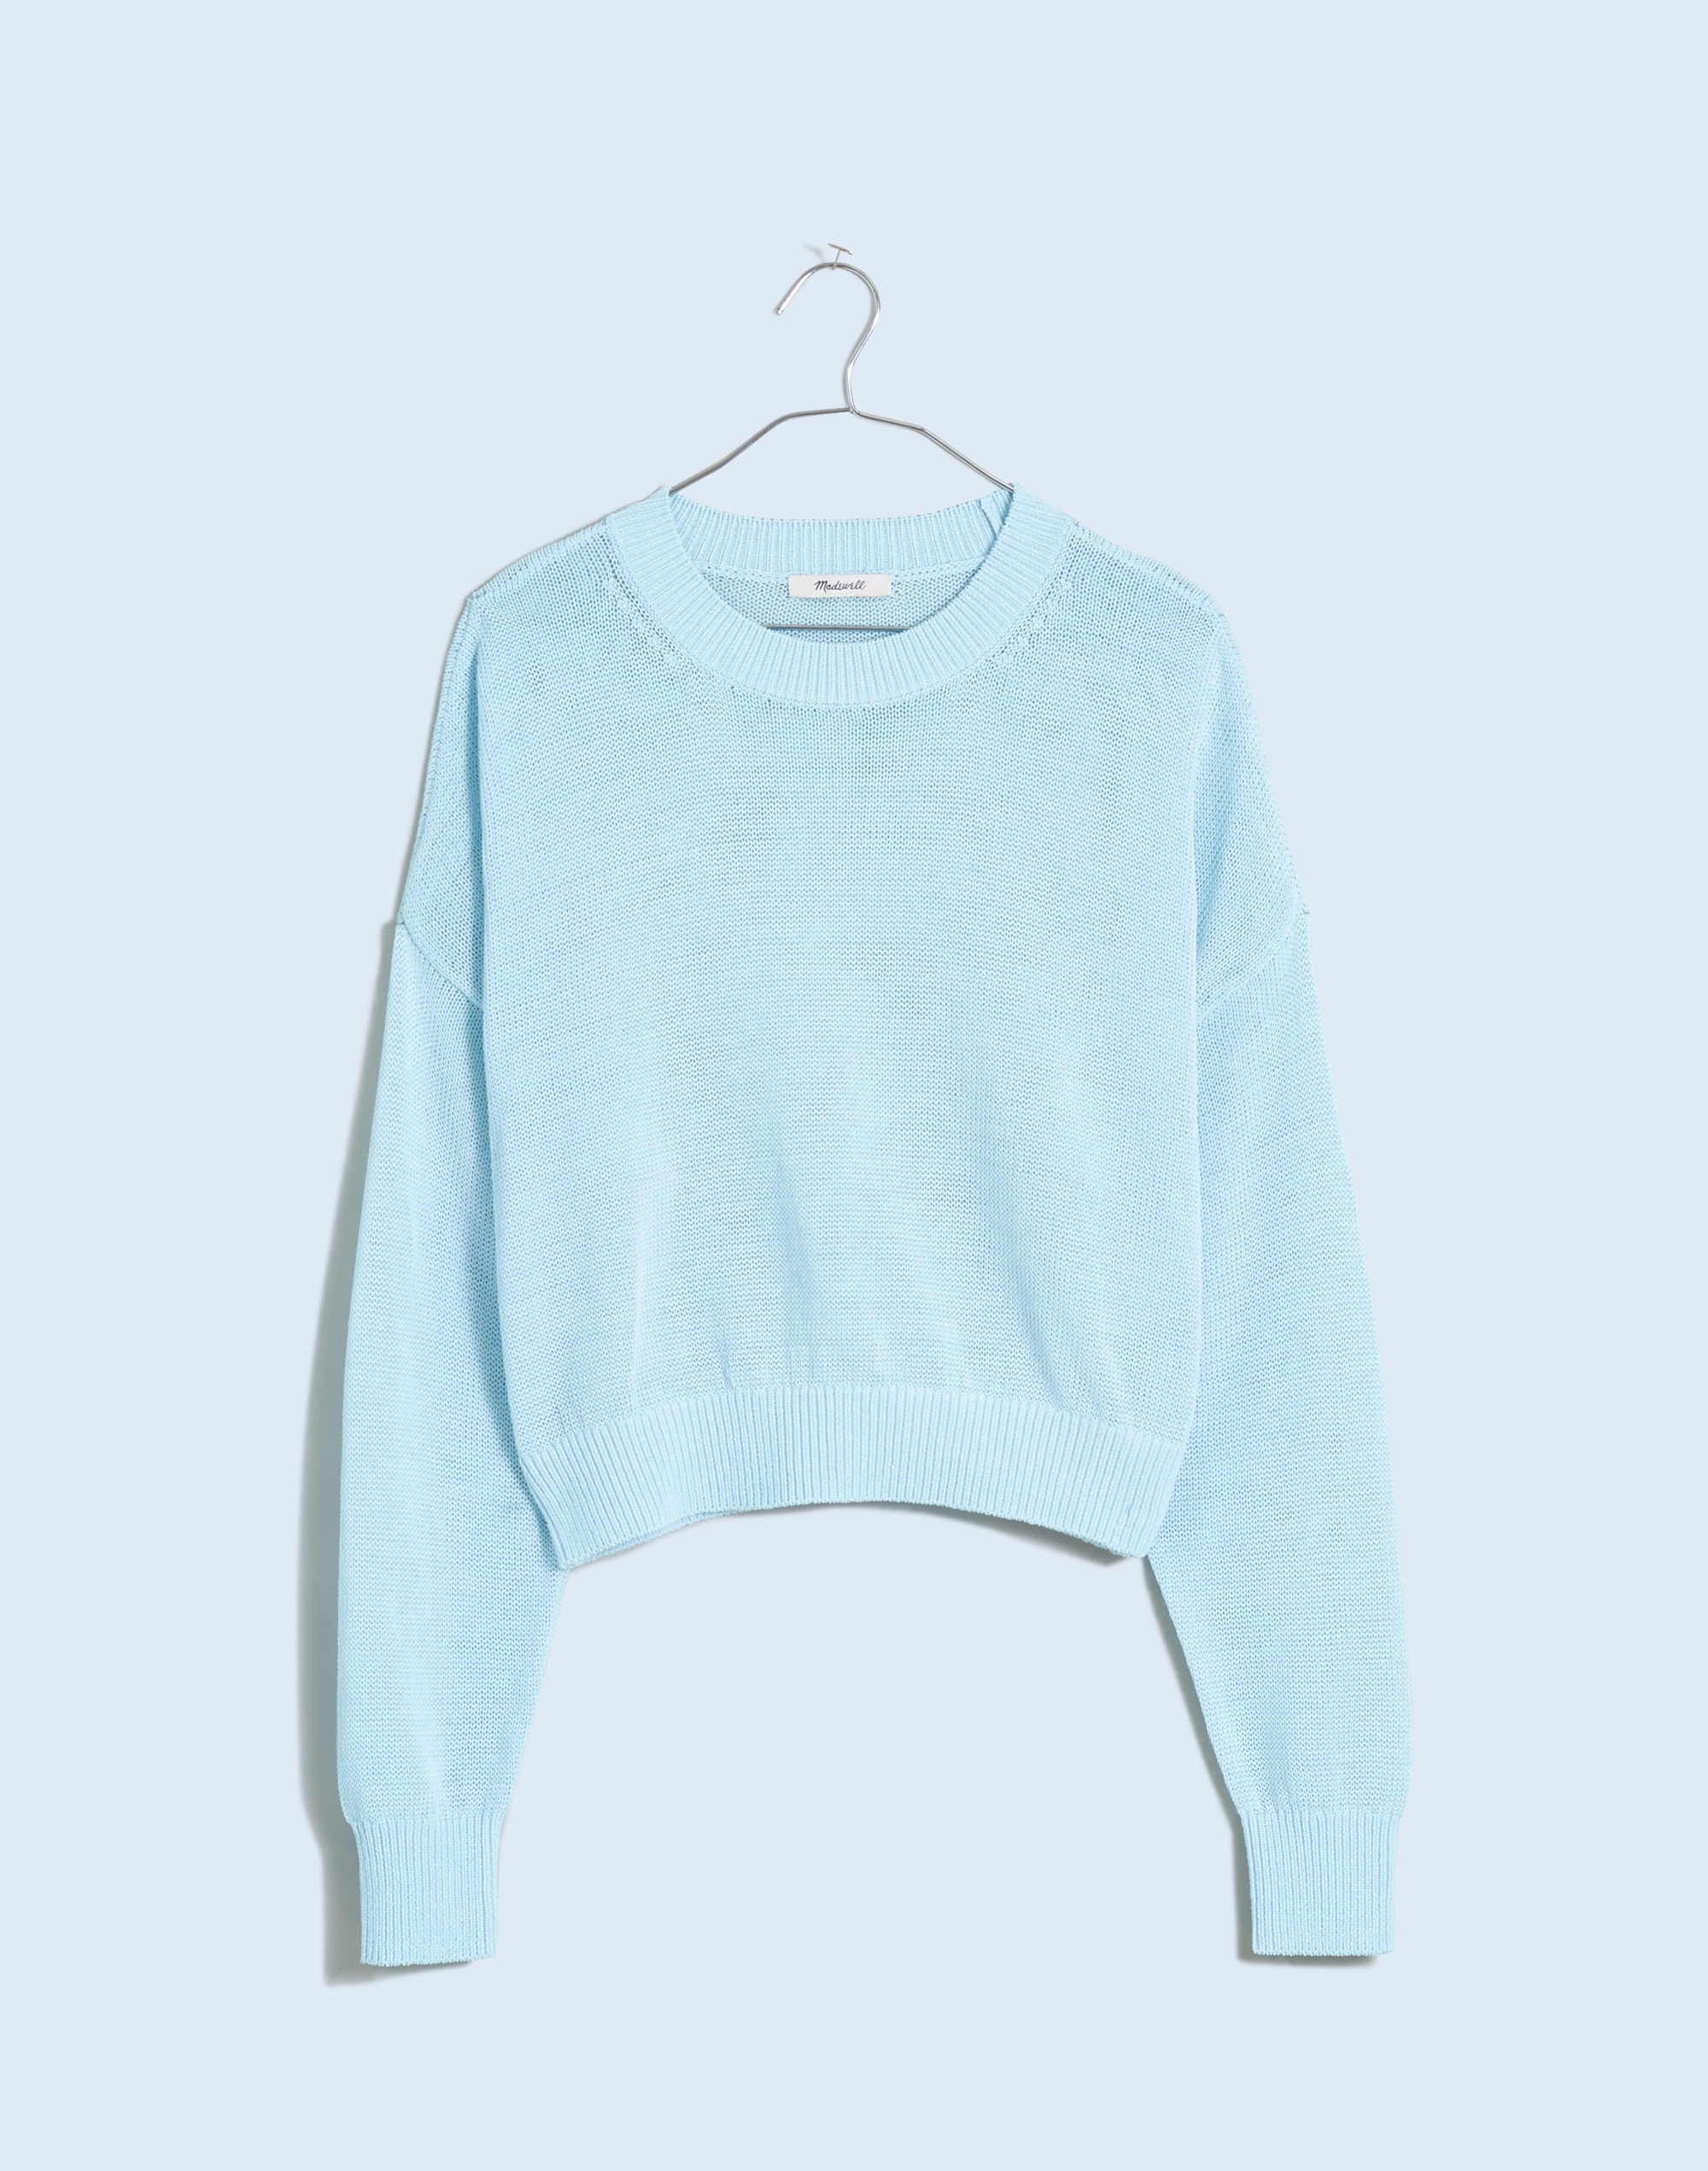 Plus Loose-Knit Crewneck Sweater